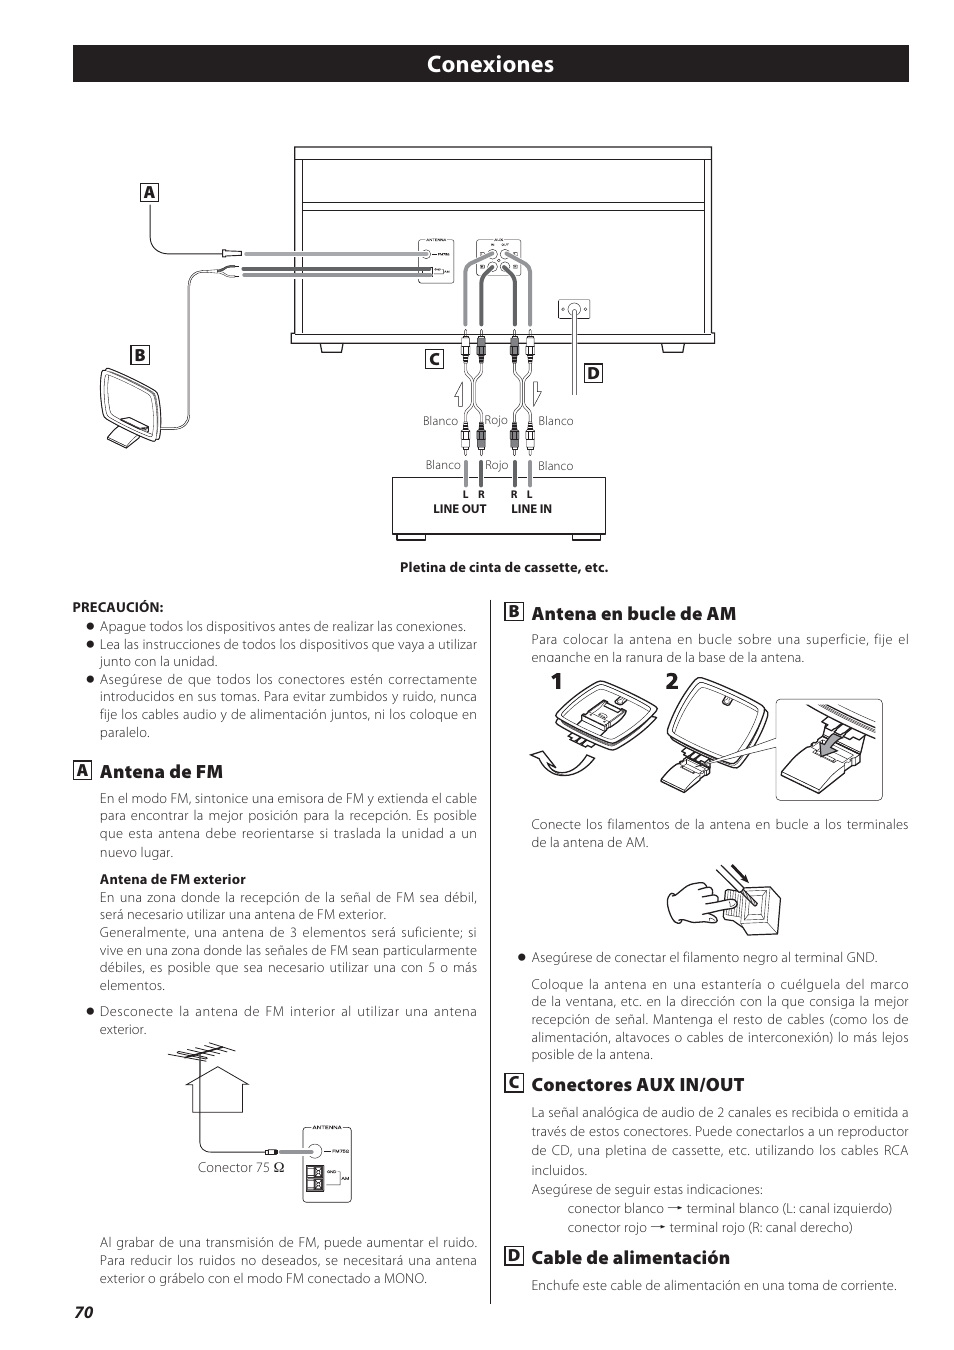 Conexiones, Antena de fm, Antena en bucle de am | Conectores aux in/out, Cable de alimentación | Teac GF-550 User Manual | Page 70 / 96